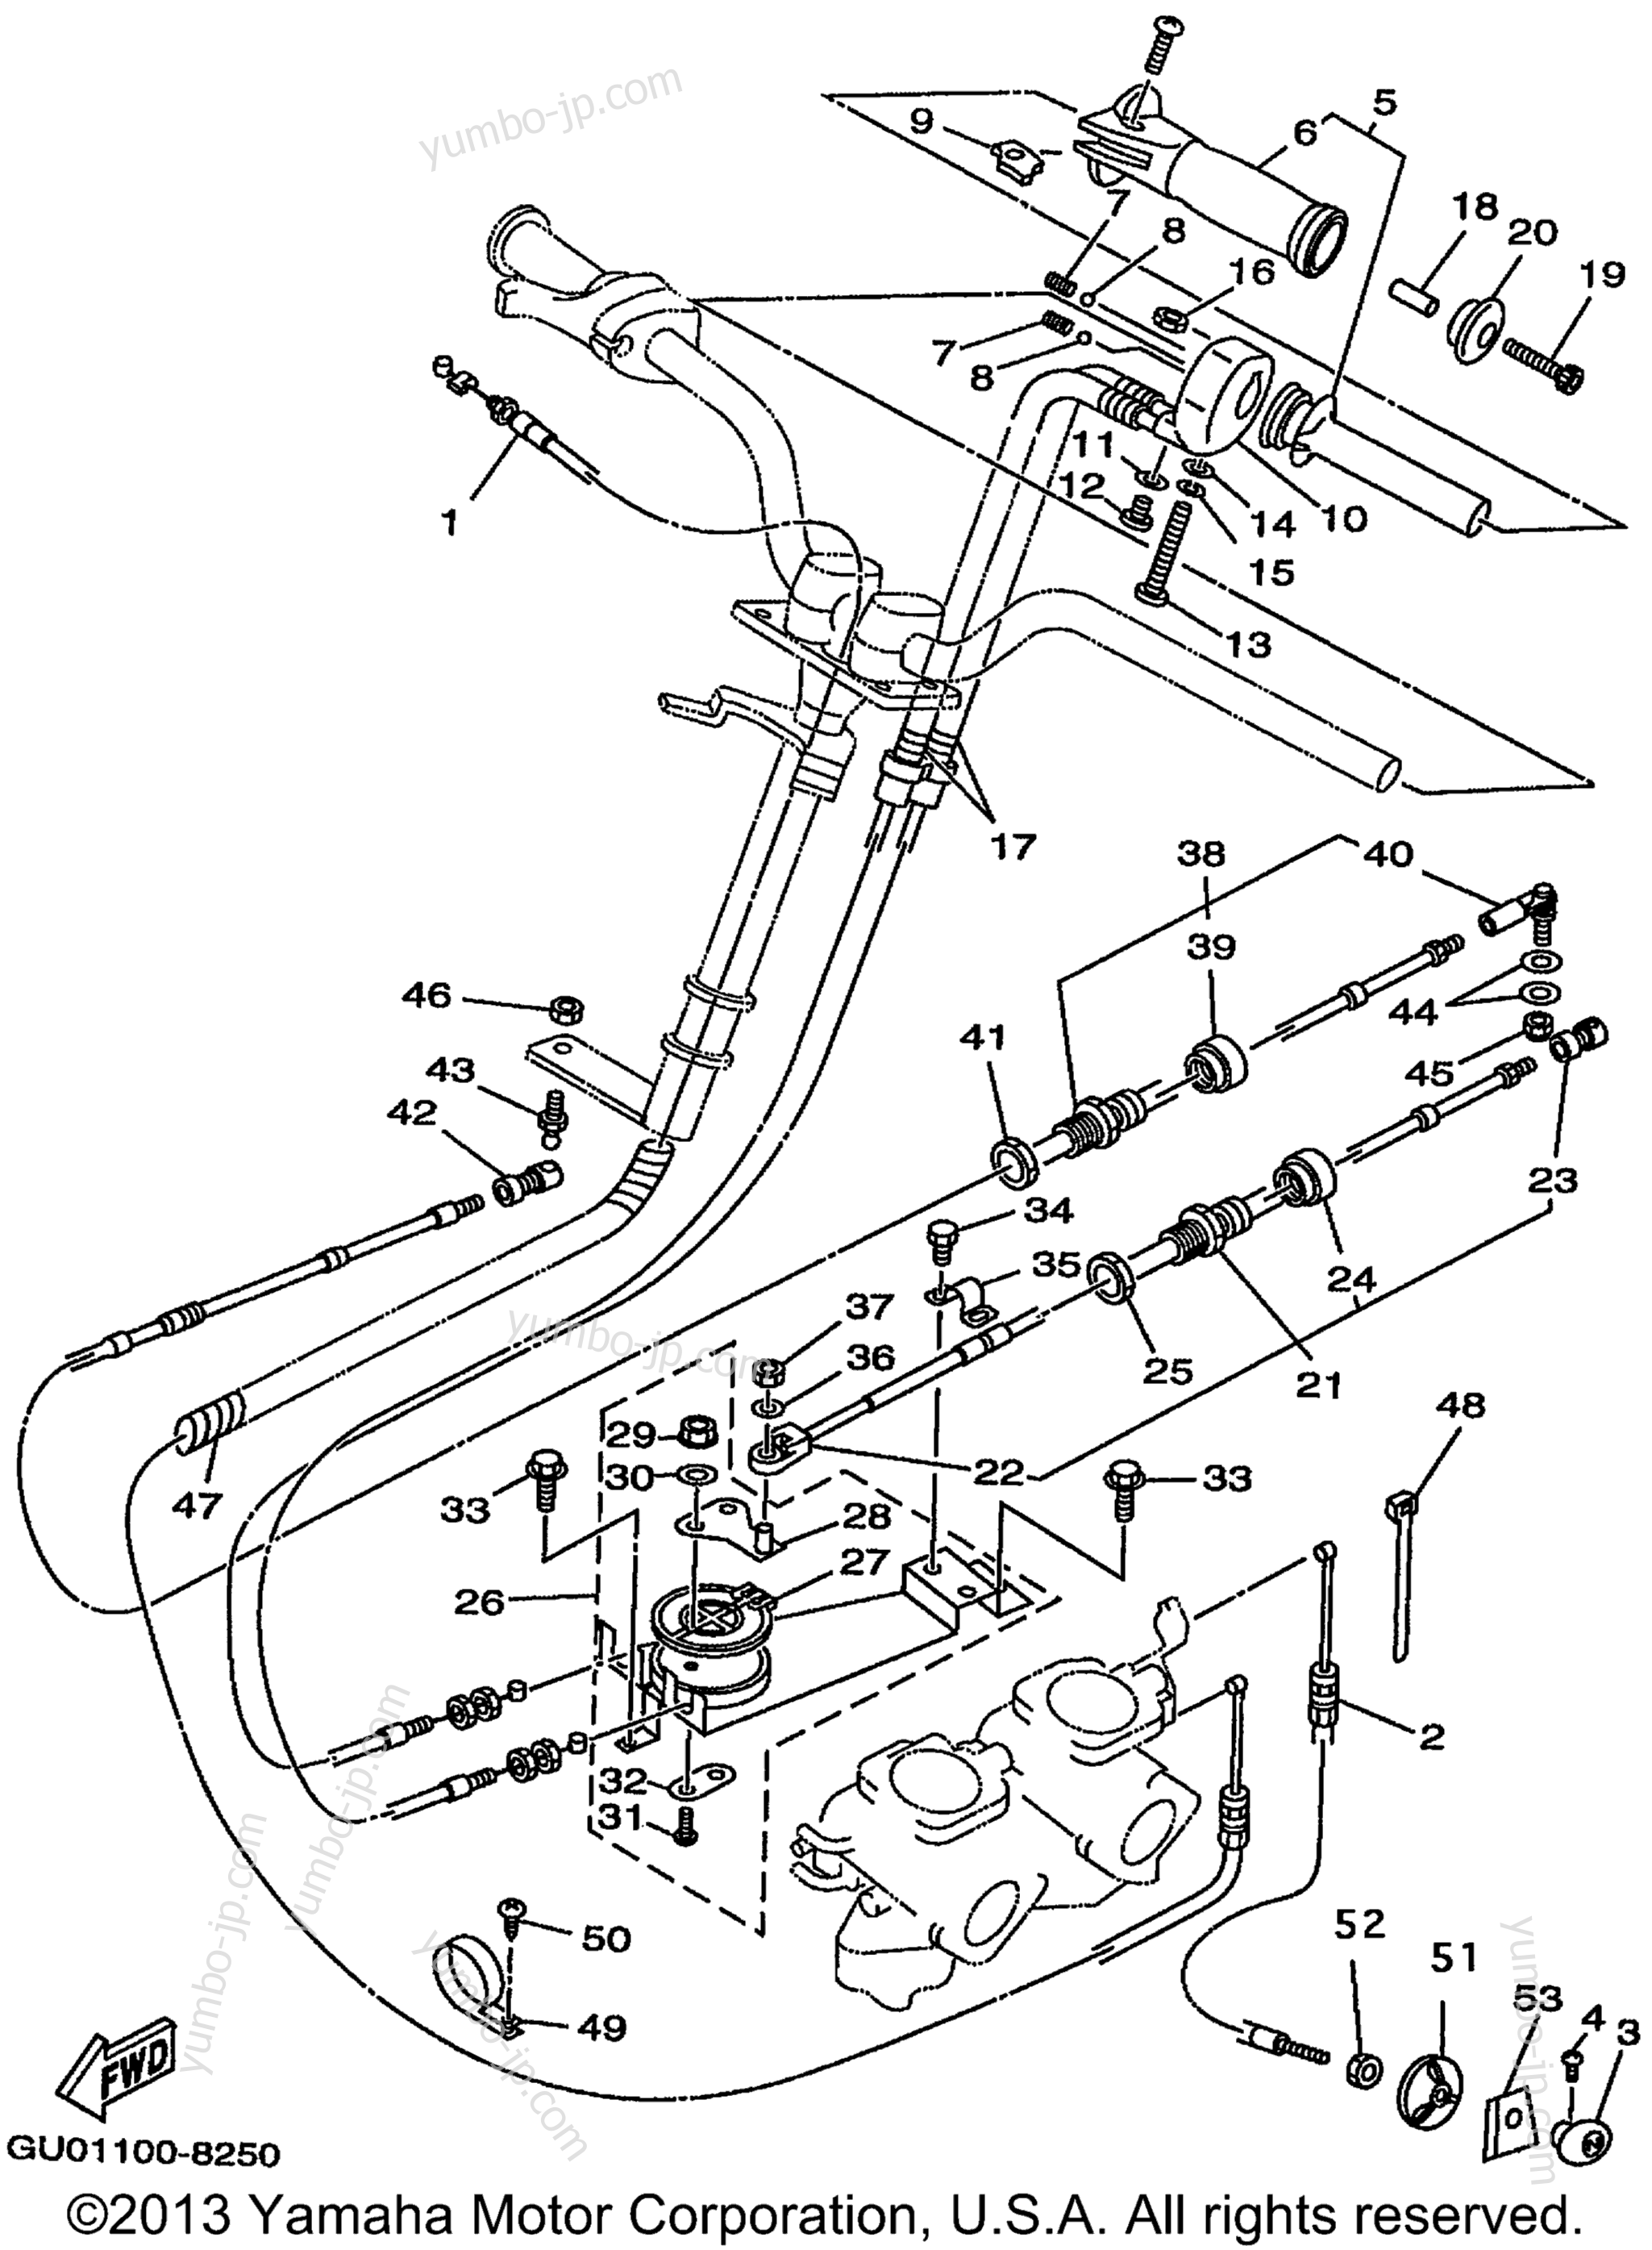 Устройство дистанционного управления / Кабеля для гидроциклов YAMAHA WAVE RUNNER GP800W (GP800W) 1998 г.